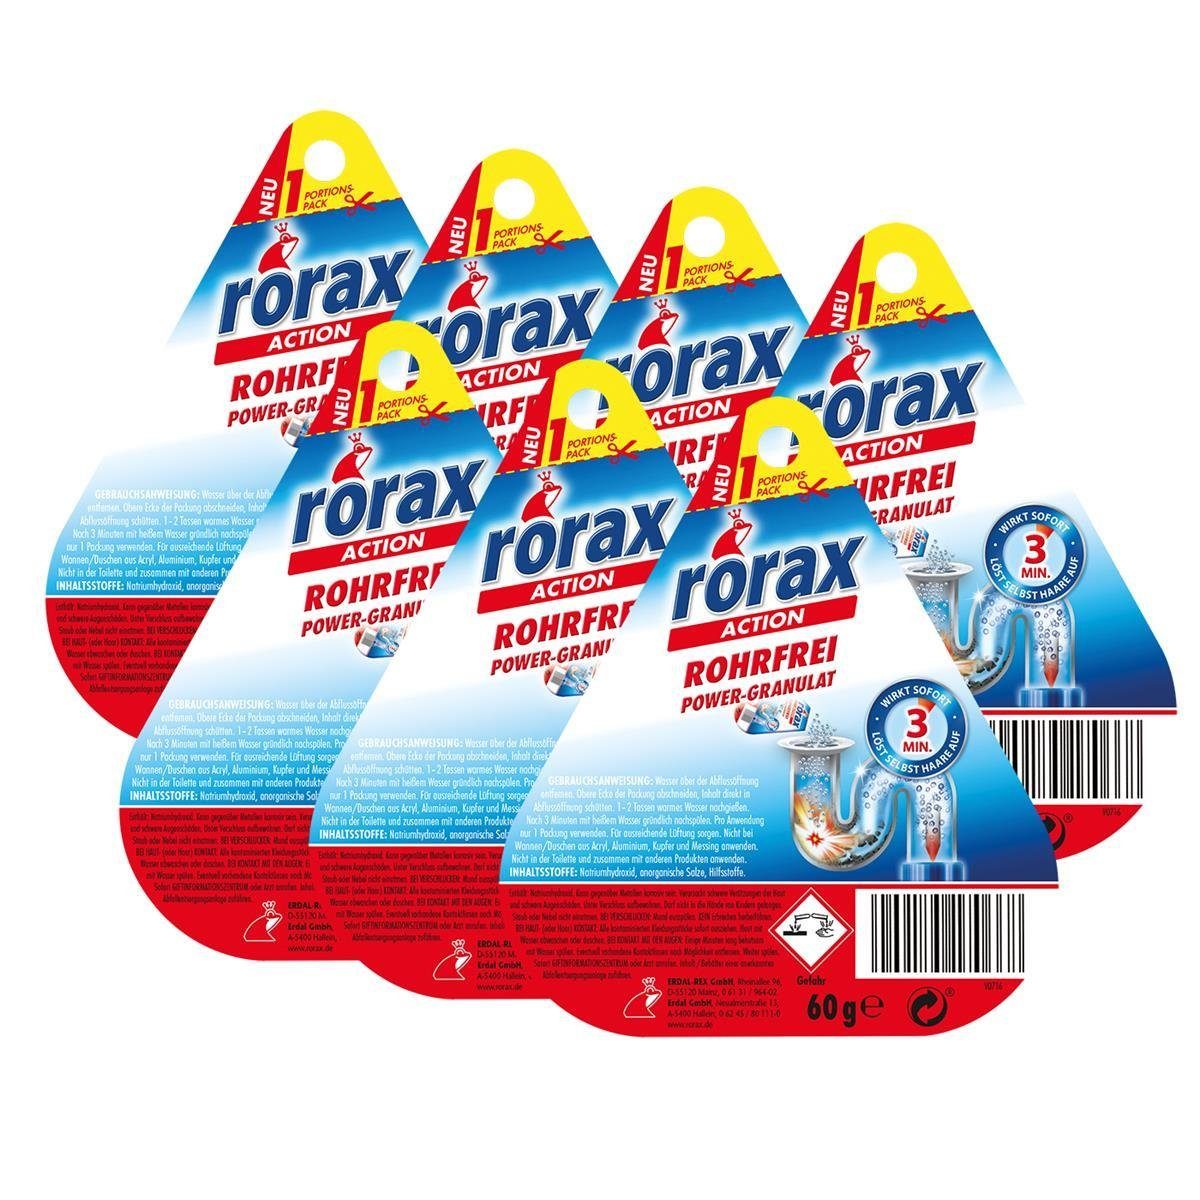 rorax 7x rorax Rohrfrei Power-Granulat Portionspack 60g - Wirkt sofort & lös Rohrreiniger